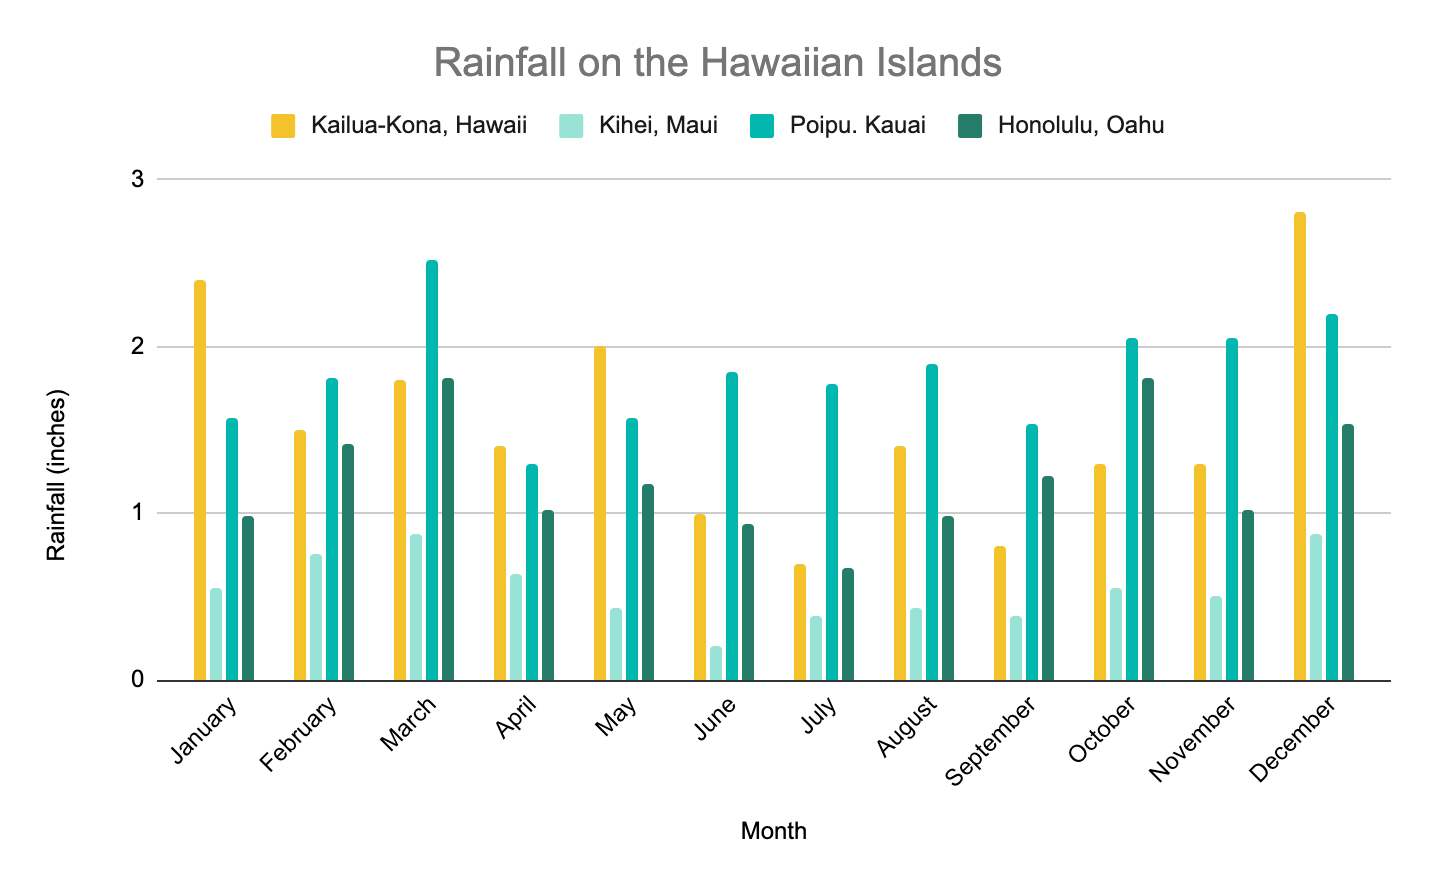 Hawaii in July - rainfall on the Hawaiian islands